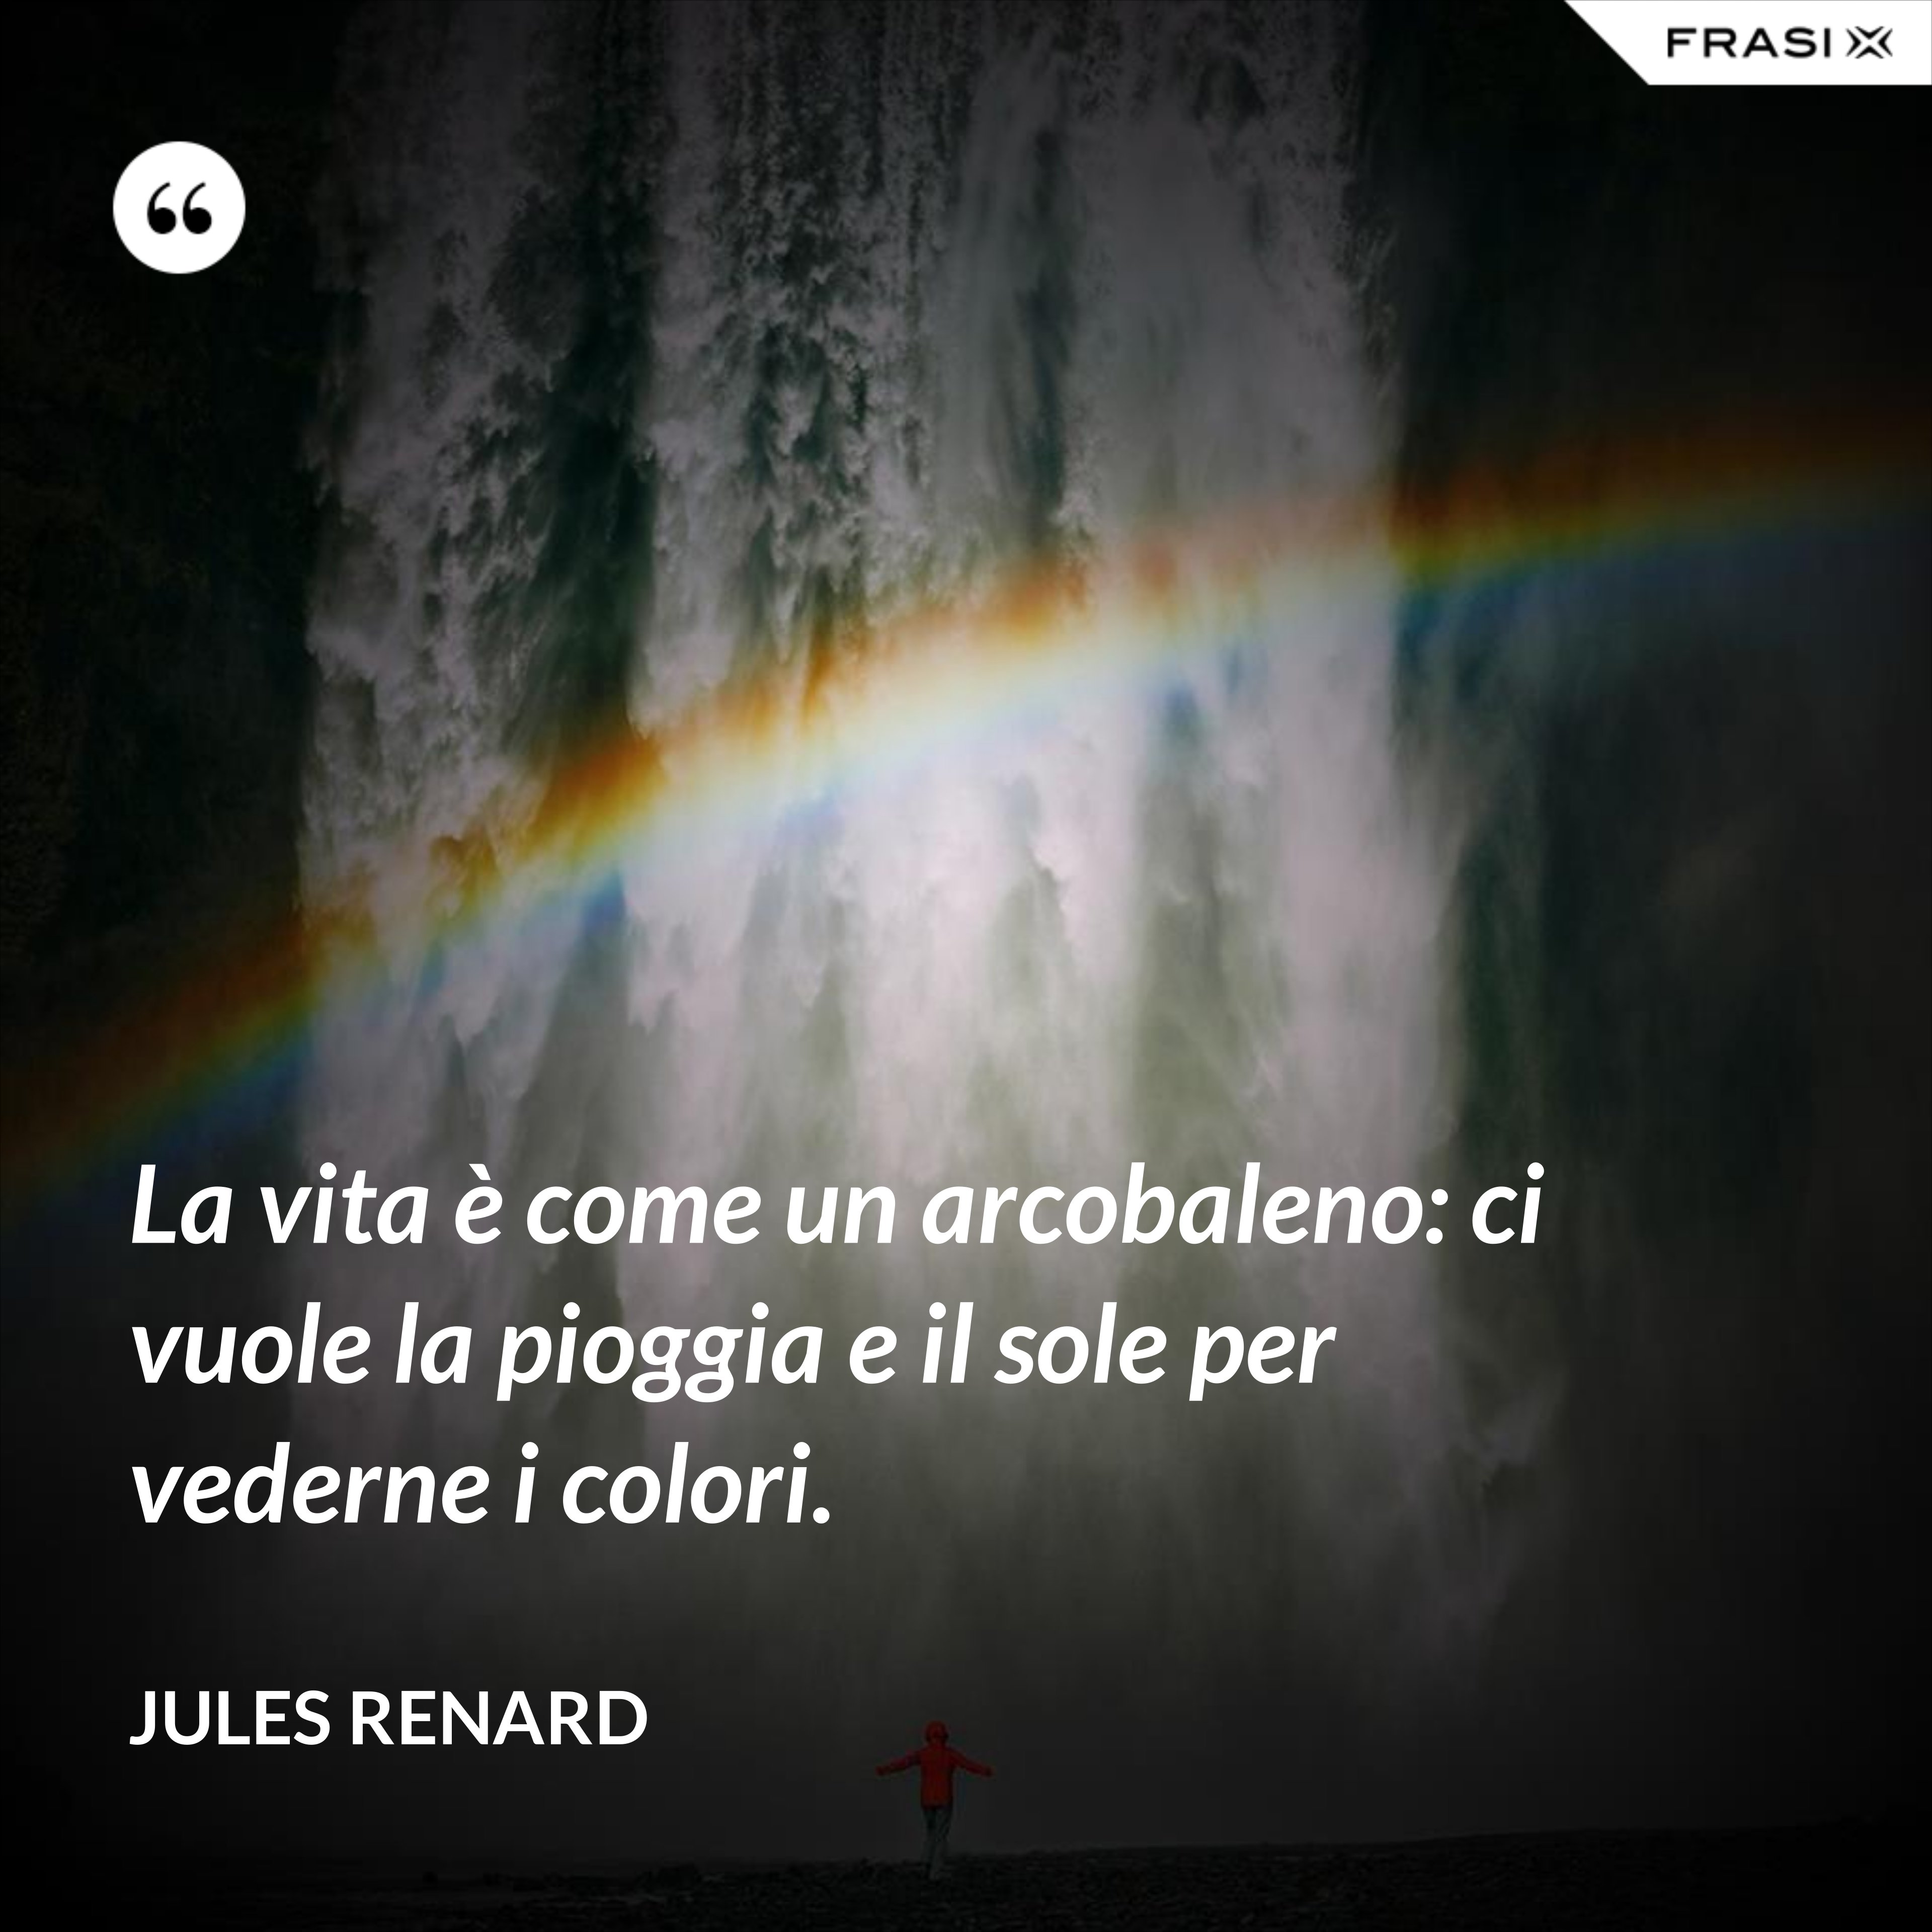 La vita è come un arcobaleno: ci vuole la pioggia e il sole per vederne i colori. - Jules Renard